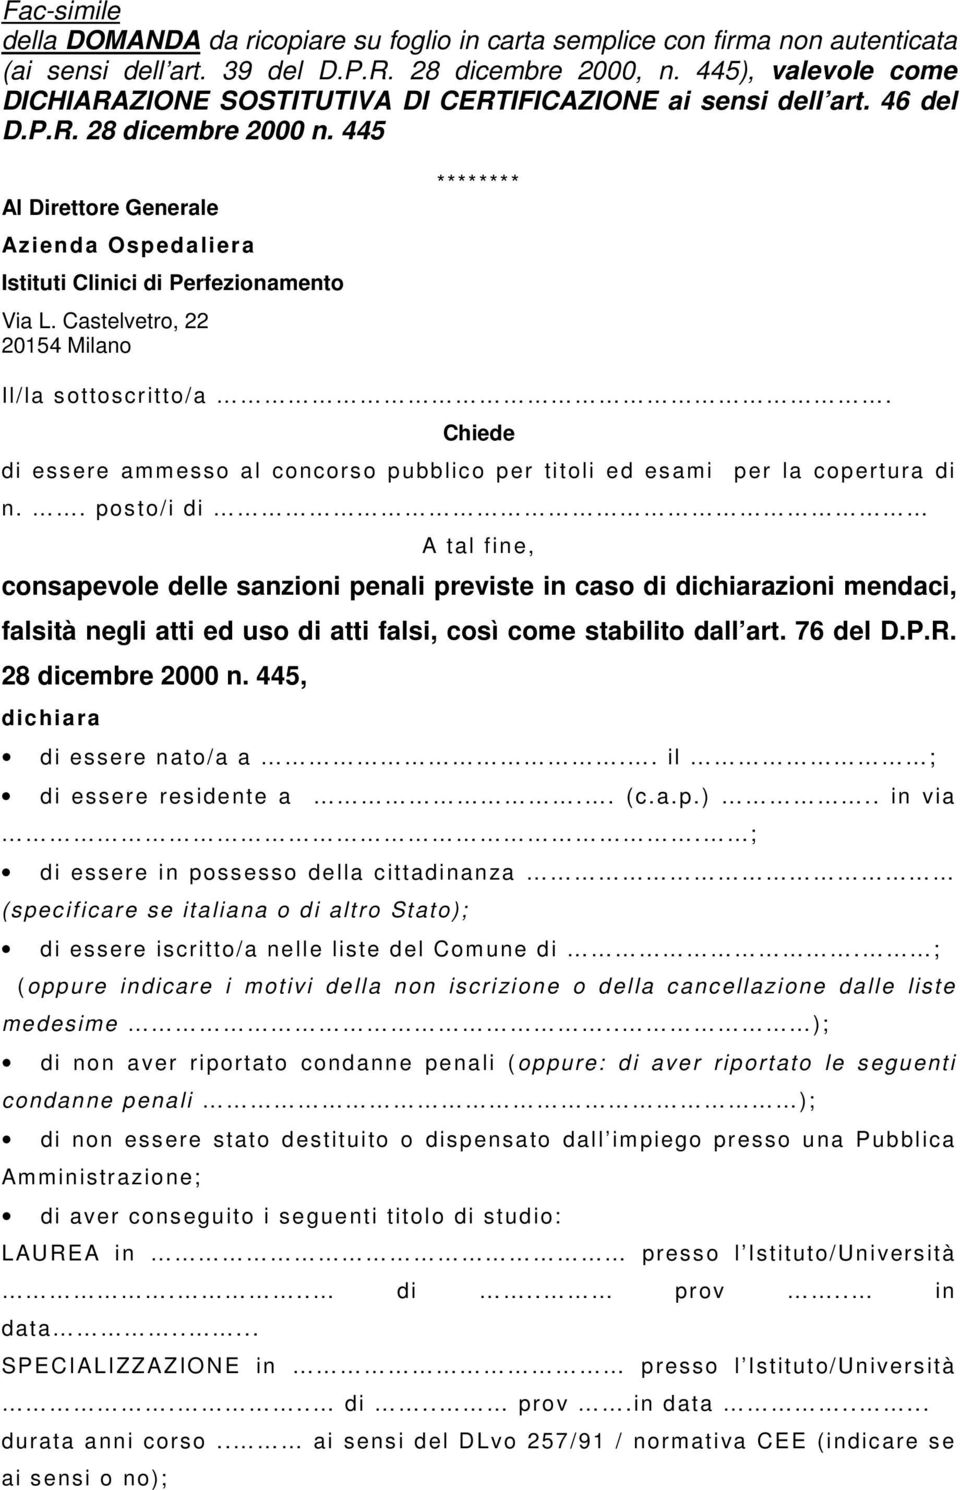 445 Al Direttore Generale Azienda Ospedaliera Istituti Clinici di Perfezionamento Via L. Castelvetro, 22 20154 Milano ******** Il/la sottoscritto/a.